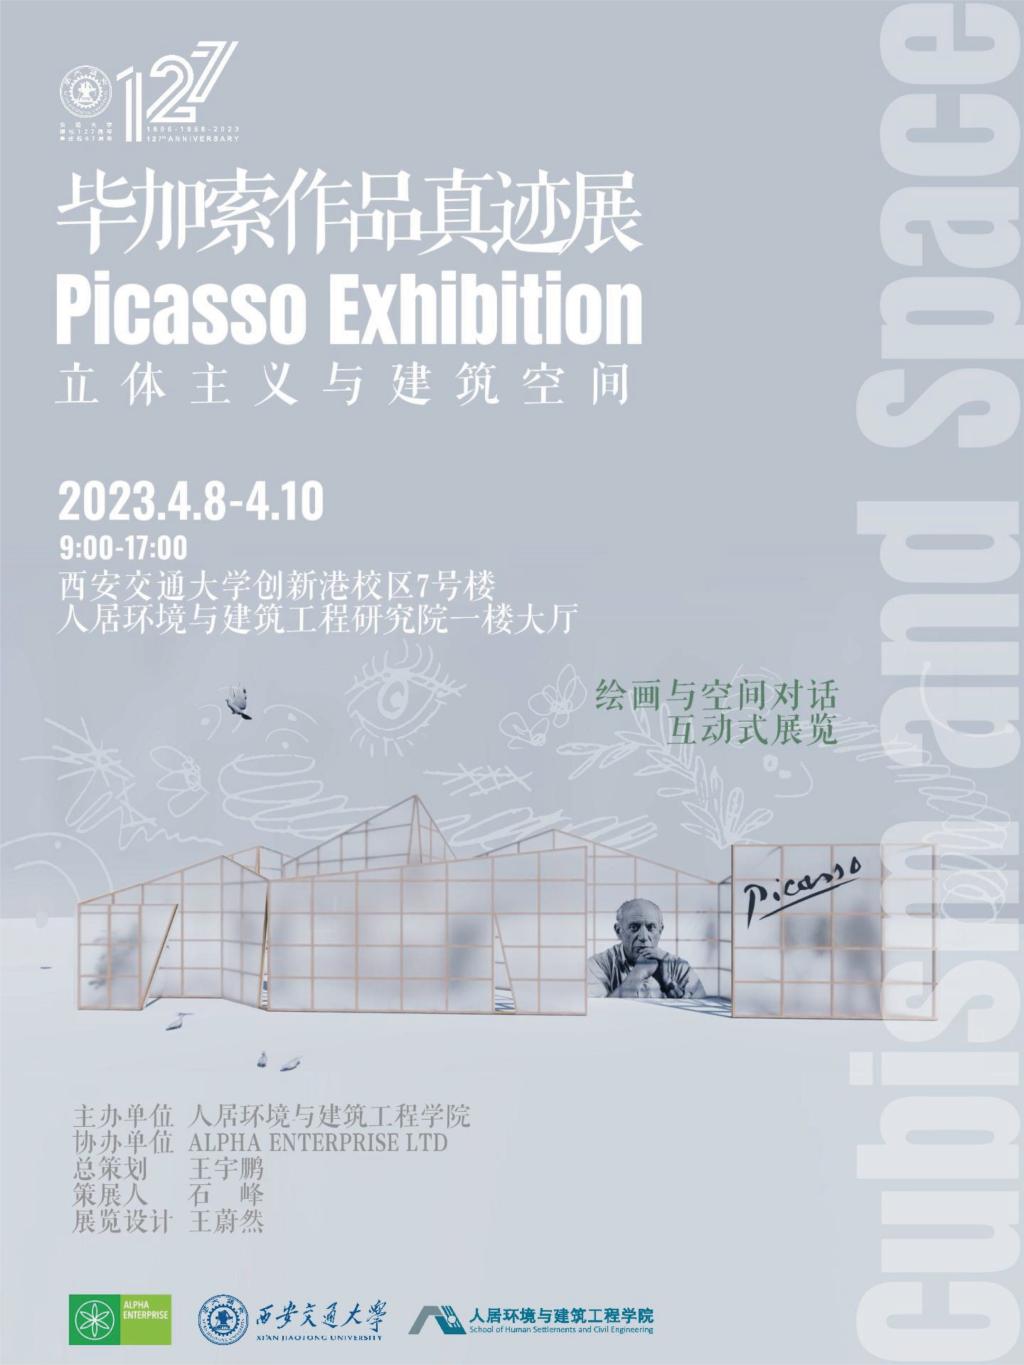 【127校庆】西安交大将举办“立体主义与建筑空间——毕加索作品真迹展”